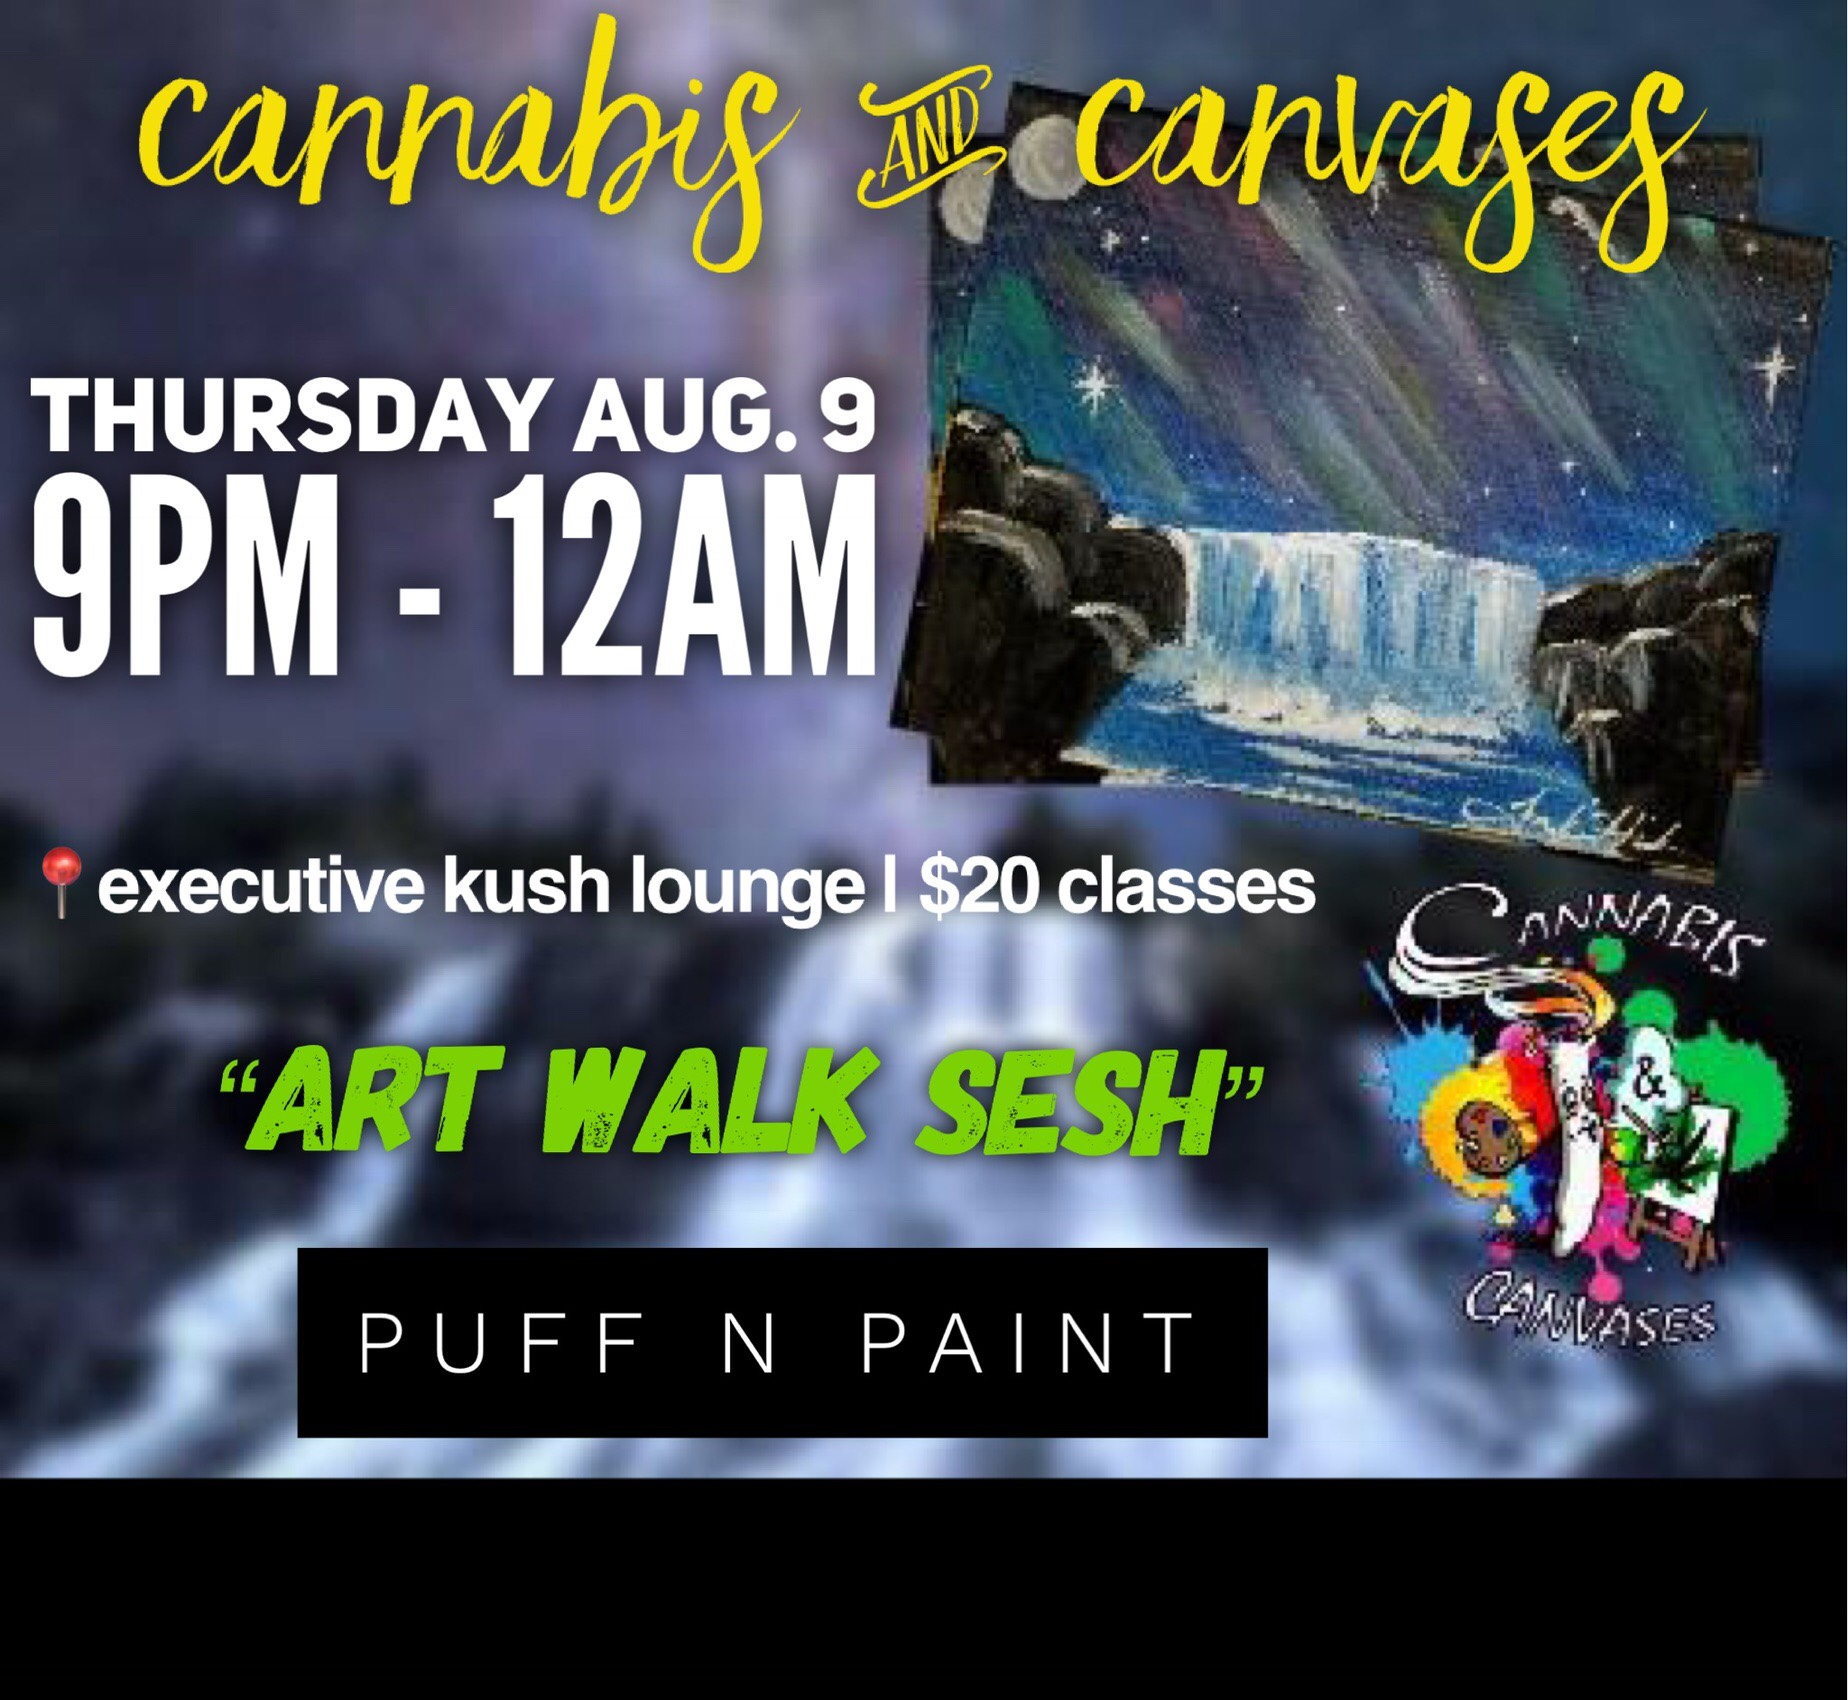 Puff N Paint Class - Art Walk Sesh